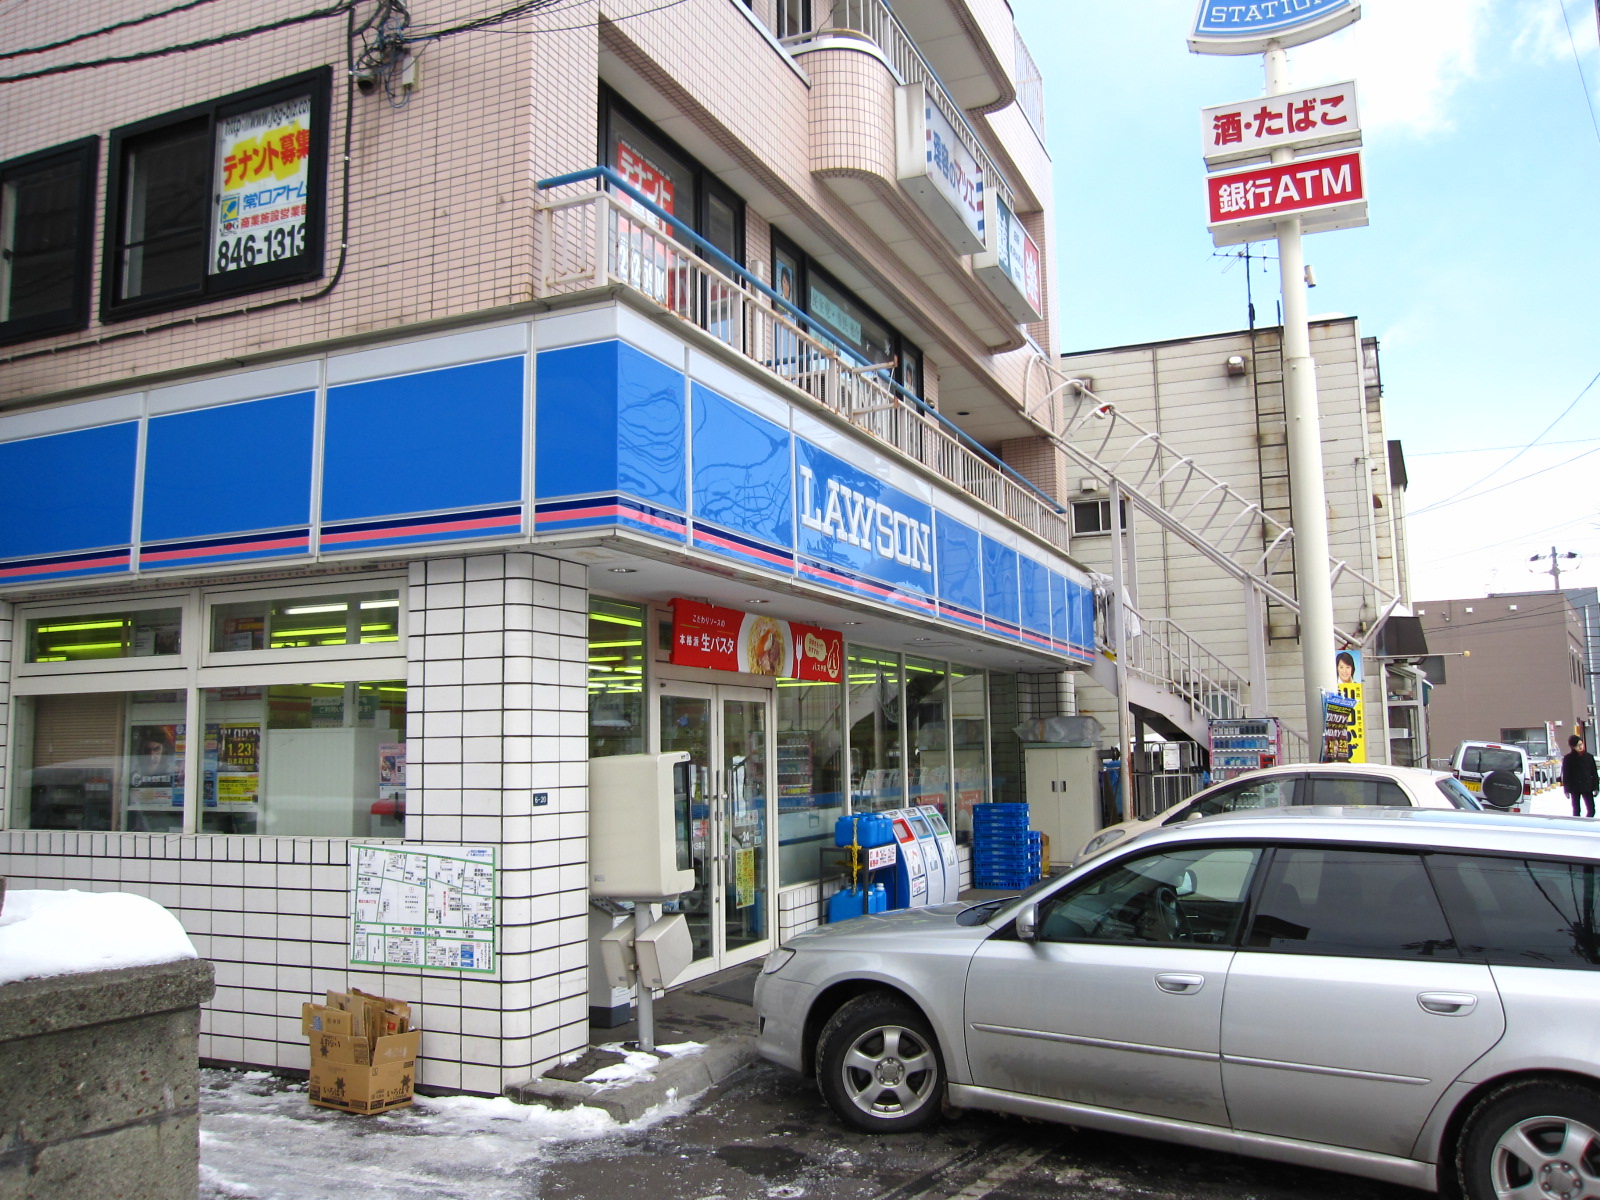 Convenience store. Lawson Sapporo Kikusui Article 3 store up (convenience store) 404m